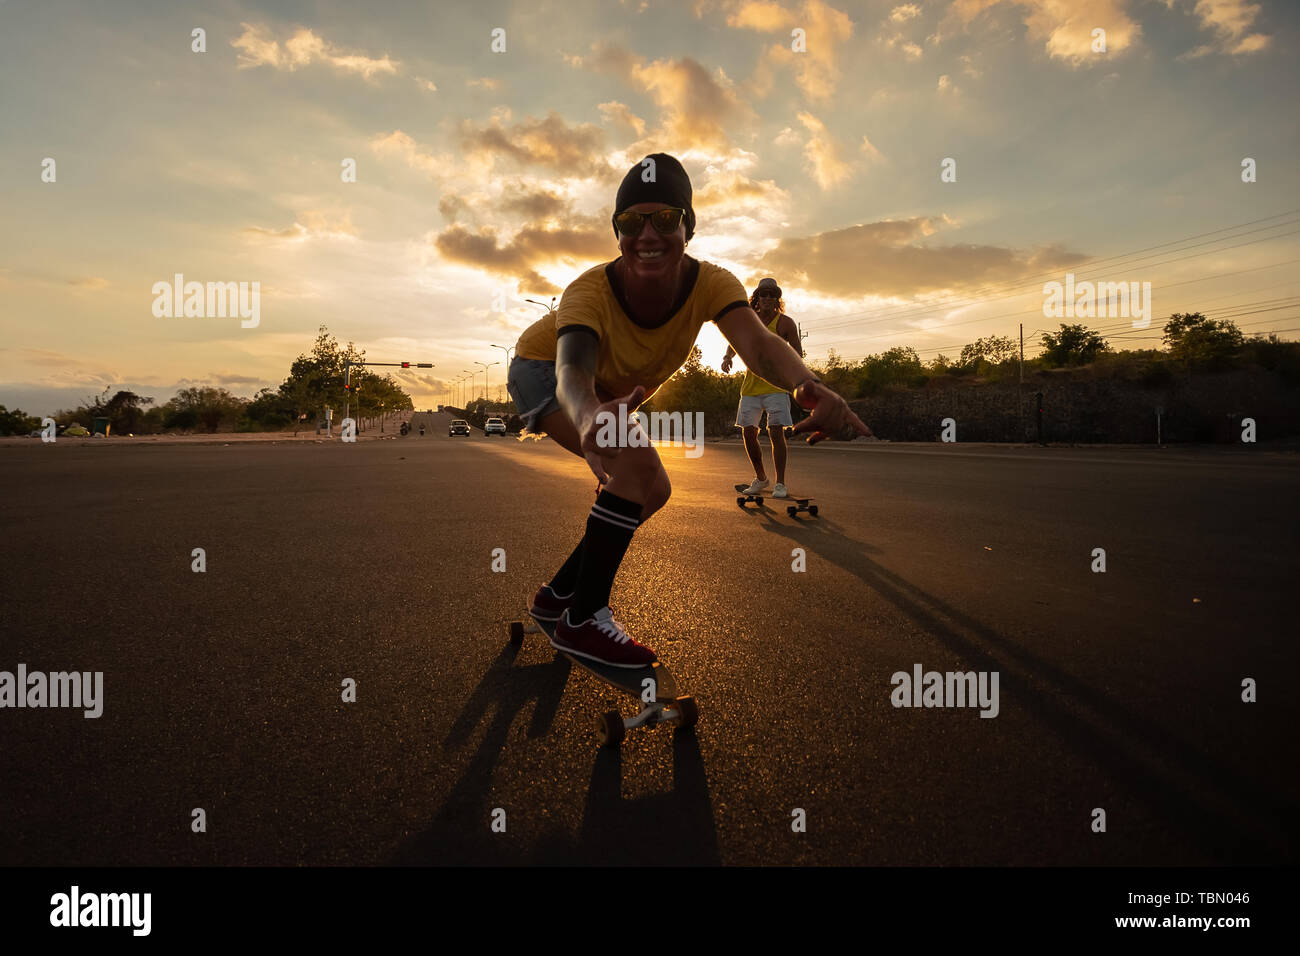 De jeunes skateboarders font du skateboard la nuit Banque D'Images